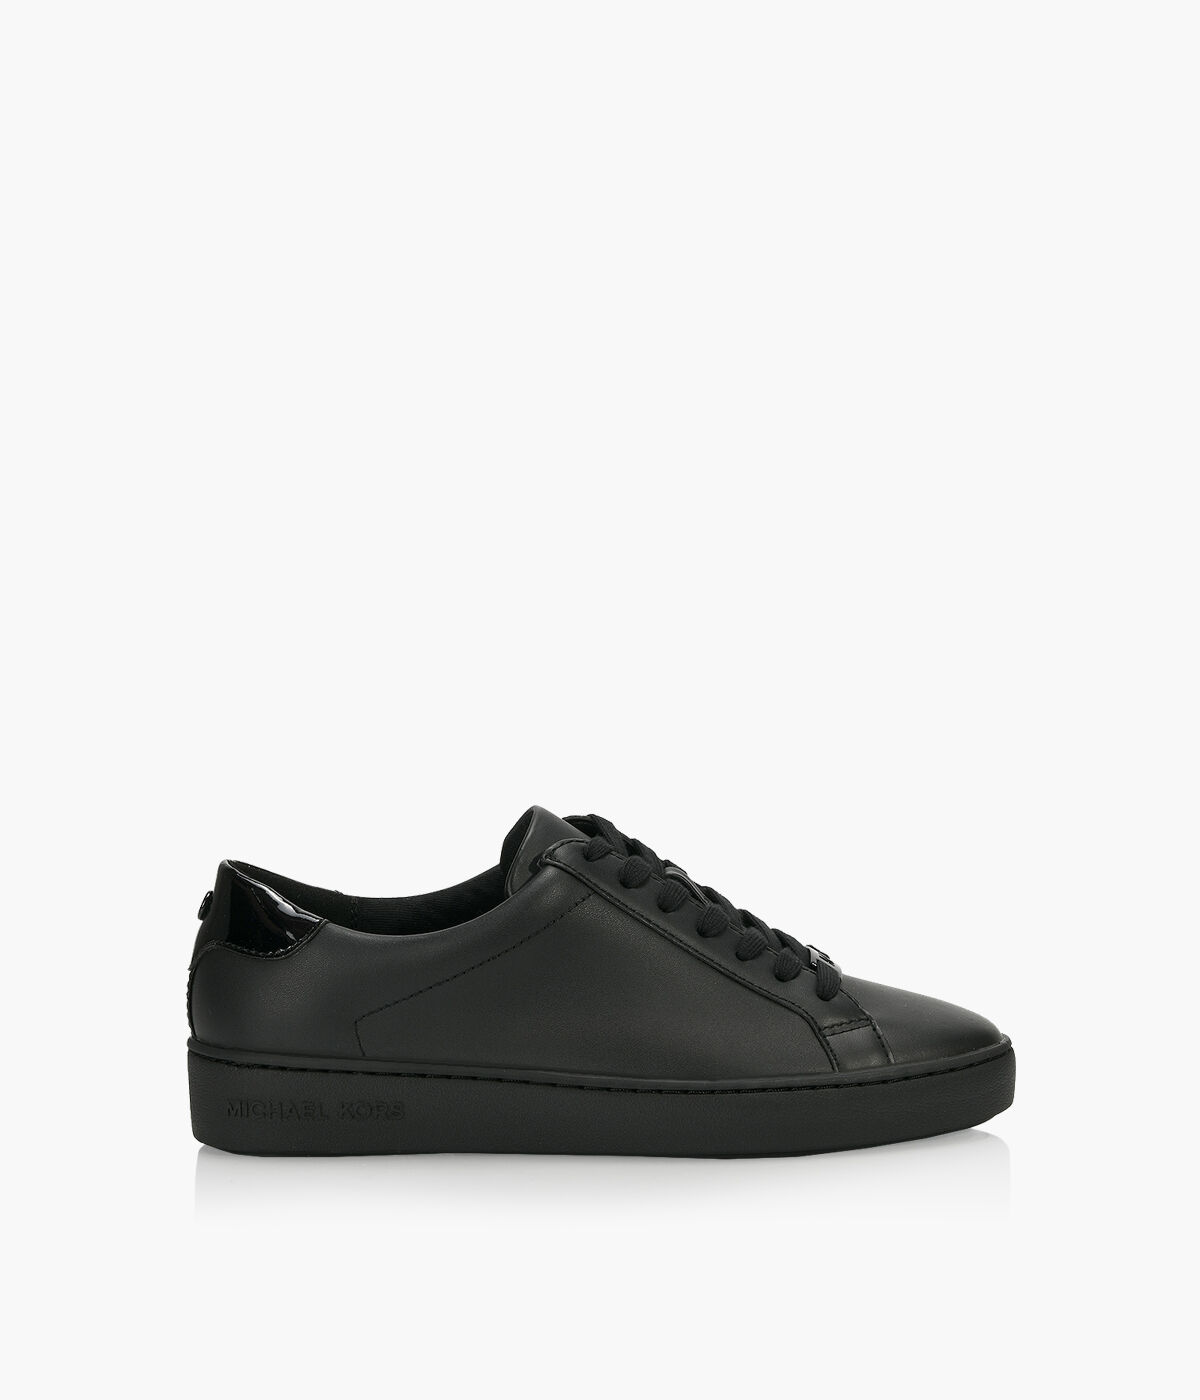 TYLER black sneakers with multicolor accents brand MICHAEL KORS   Globalbrandsstorecomen